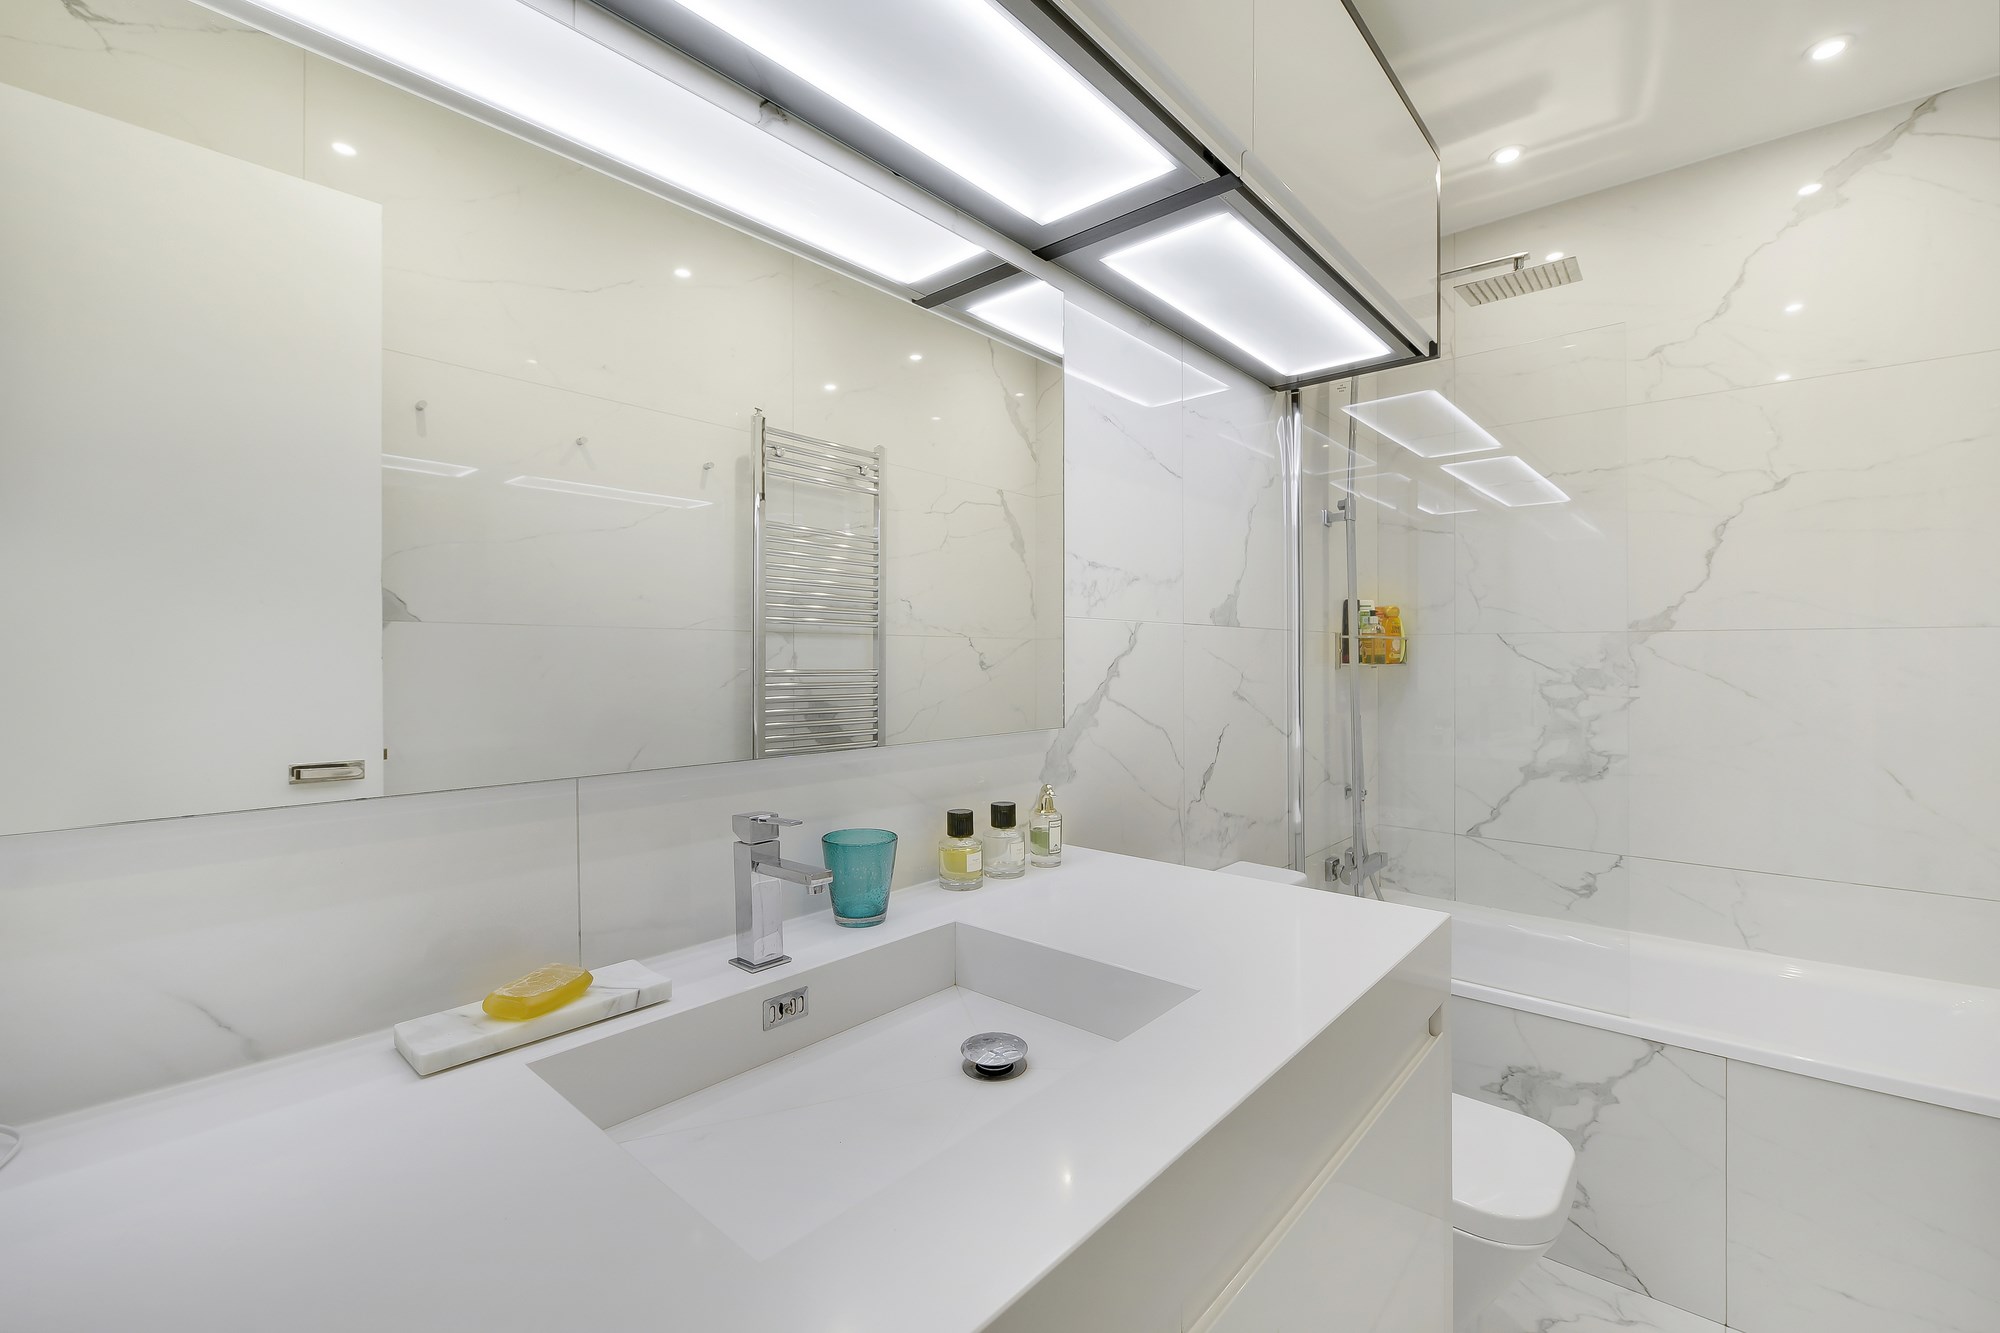 Salle de bain réalisée par nos architectes d'intérieur